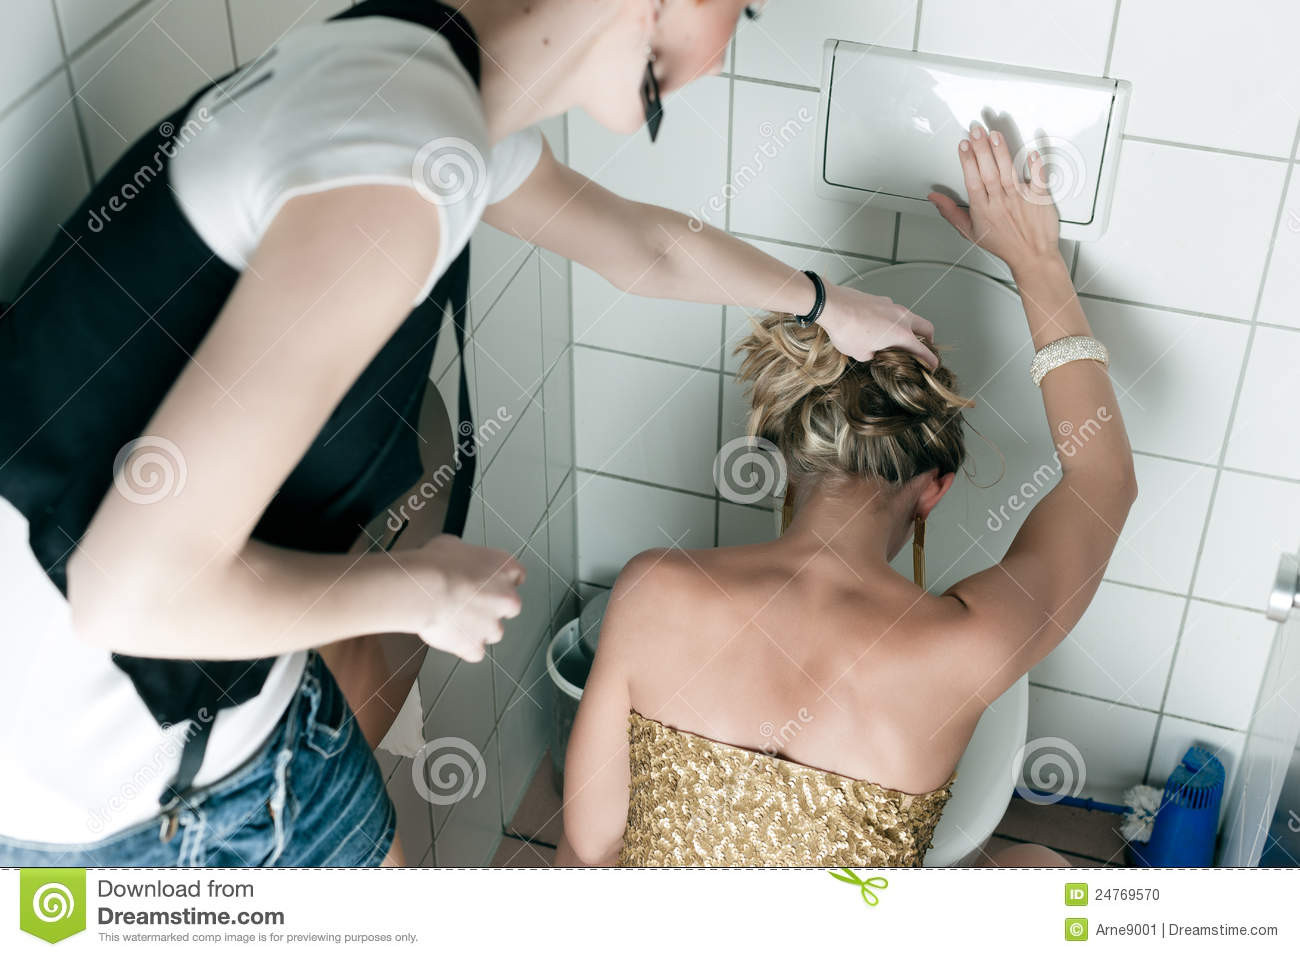 woman-throwing-up-toilet-24769570.jpg